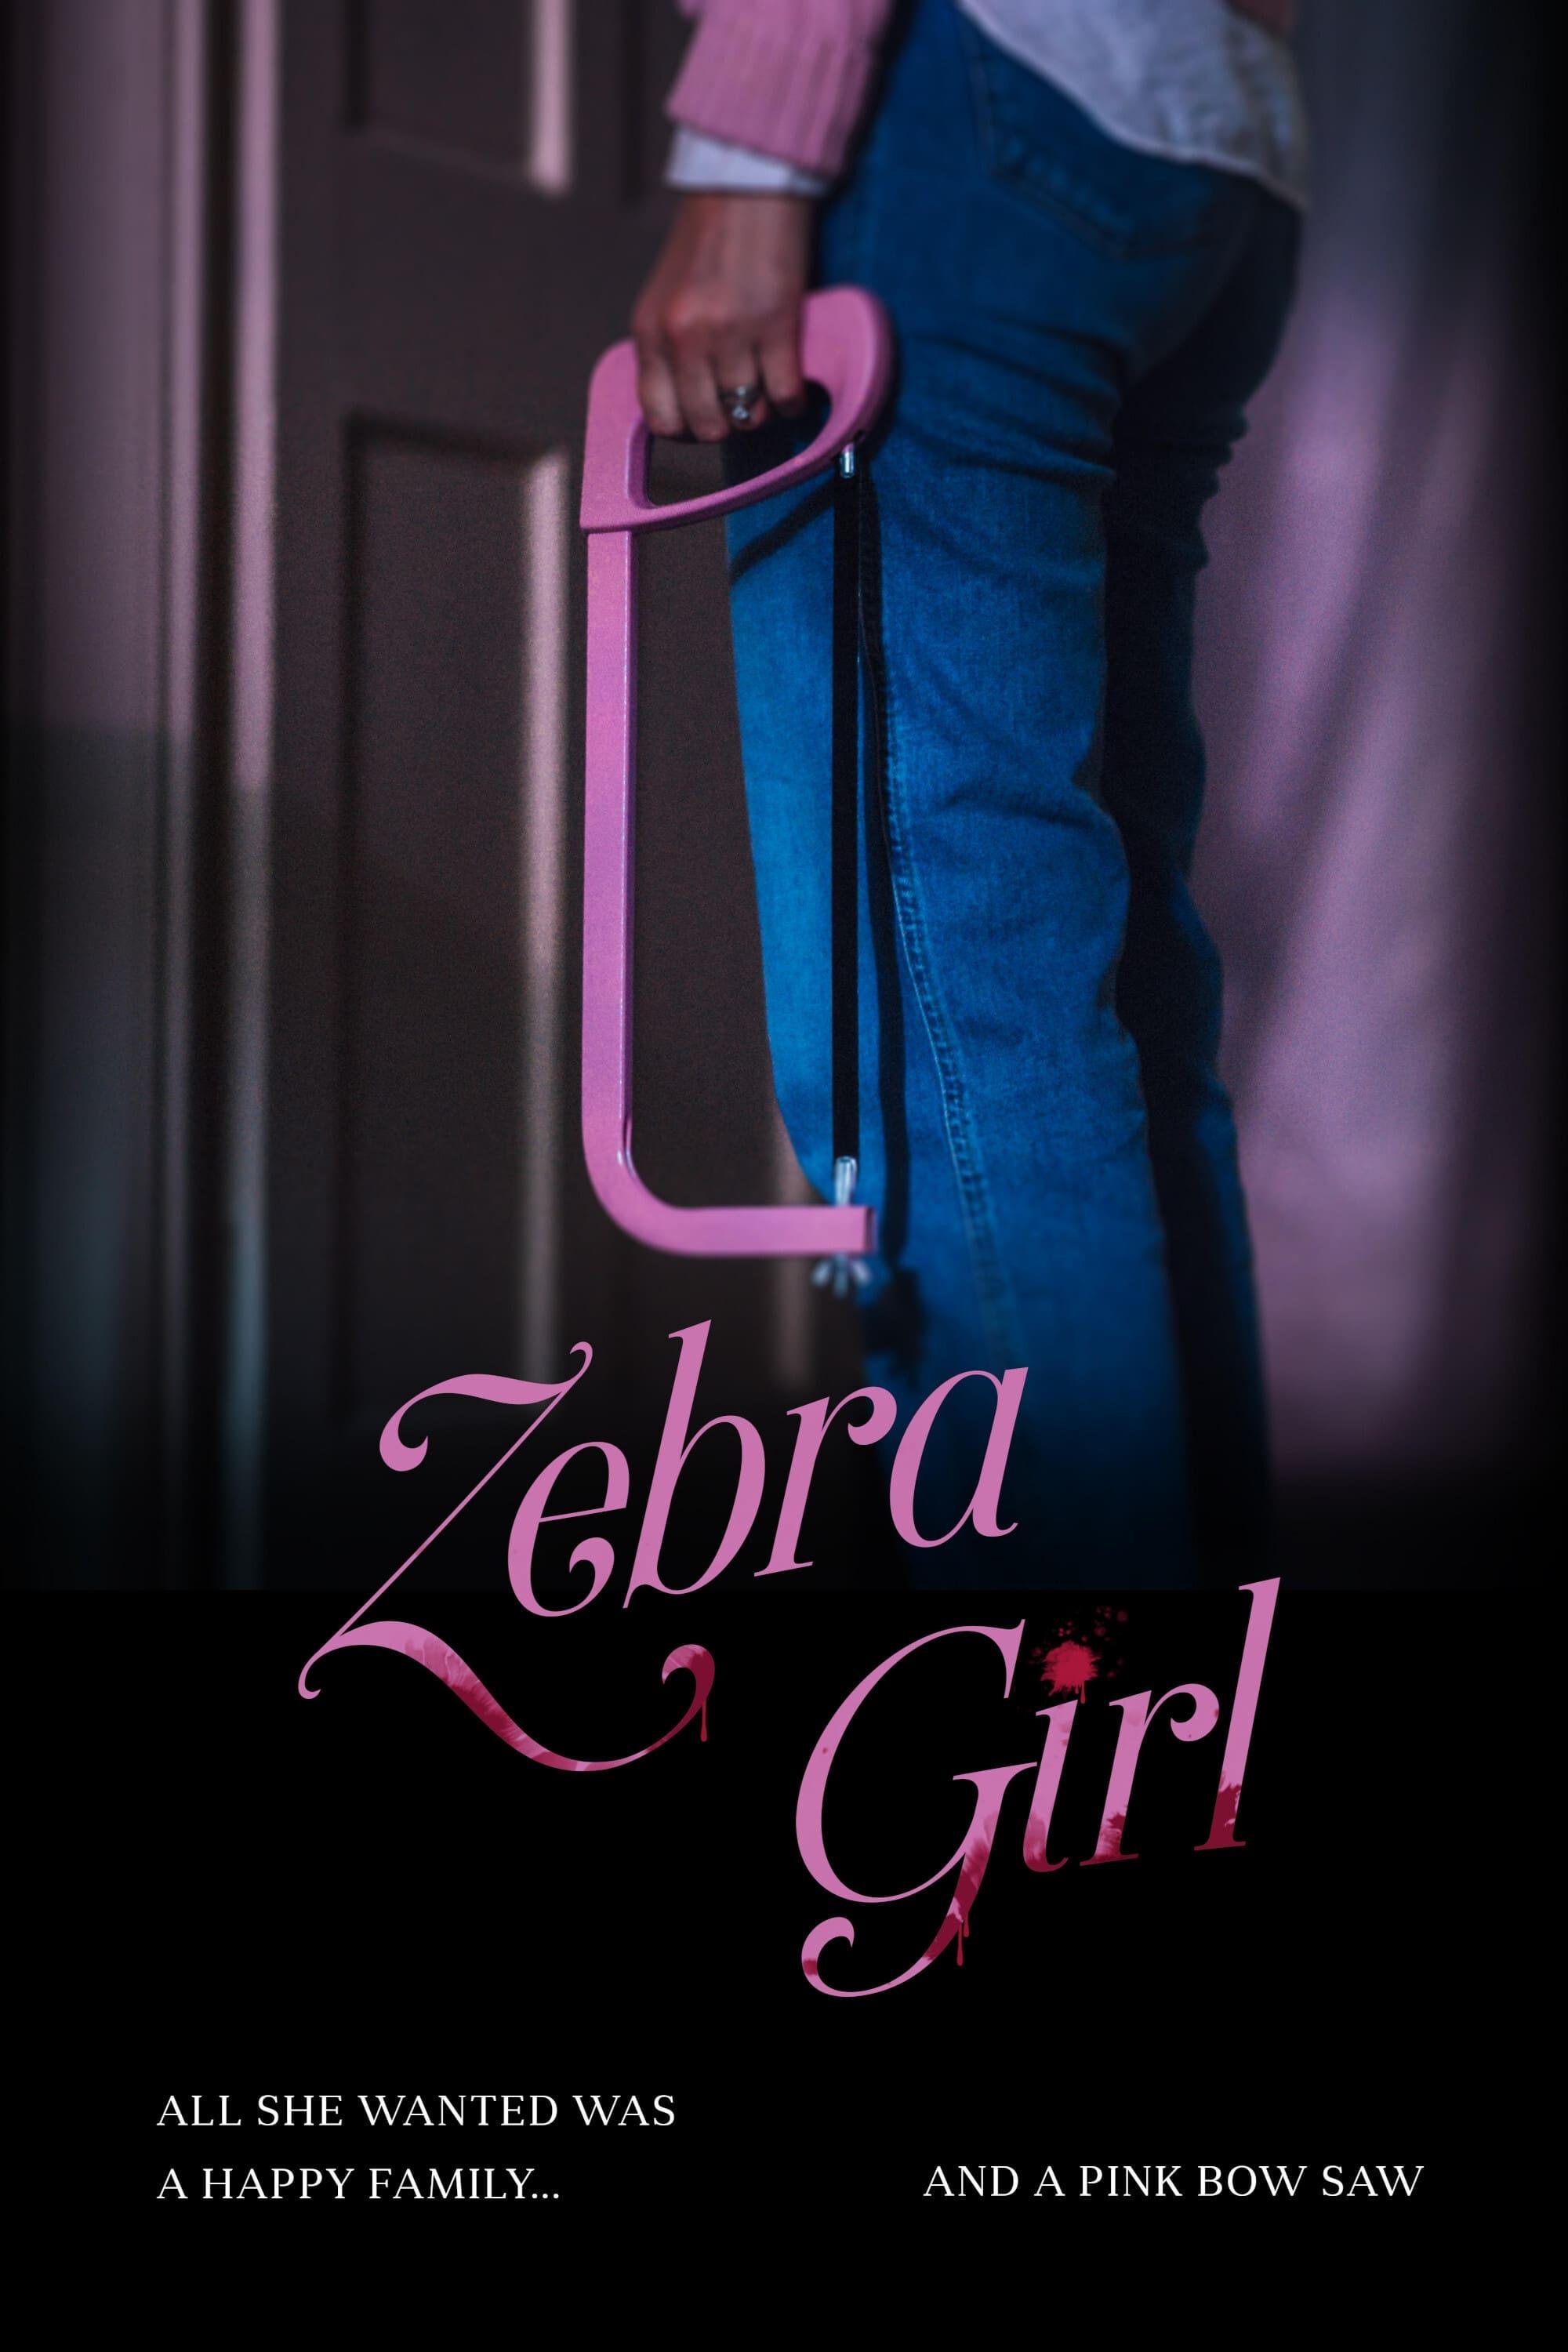 Zebra Girl poster